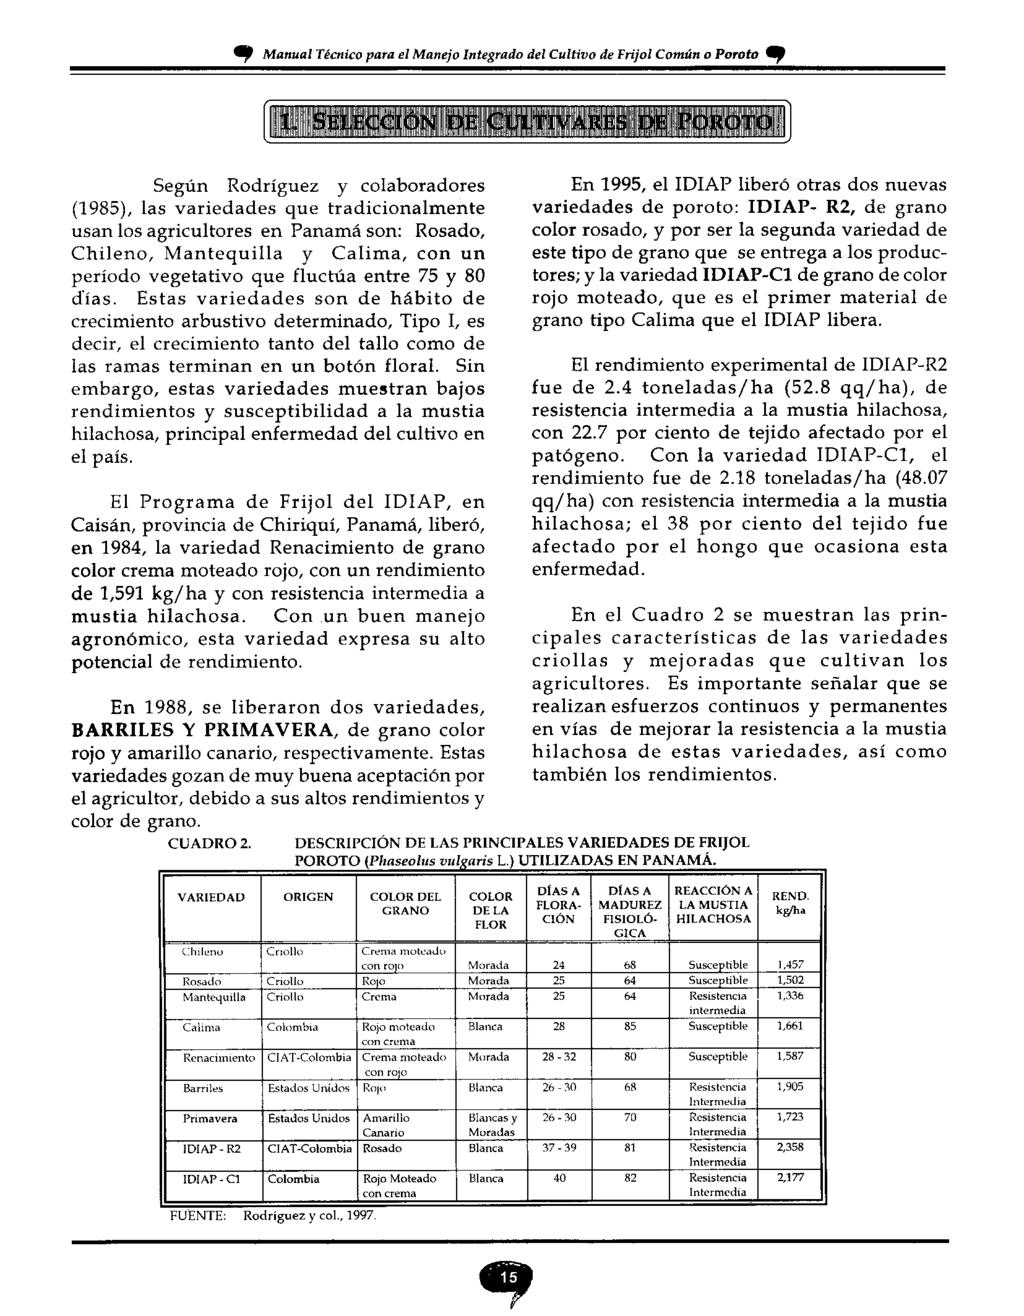 CUADRO 2 Cl Manual Técnico para el Manejo Integrado del Cultivo de Frijol Común o Poroto, Según Rodríguez y colaboradores (1985), las variedades que tradicionalmente usan los agricultores en Panamá